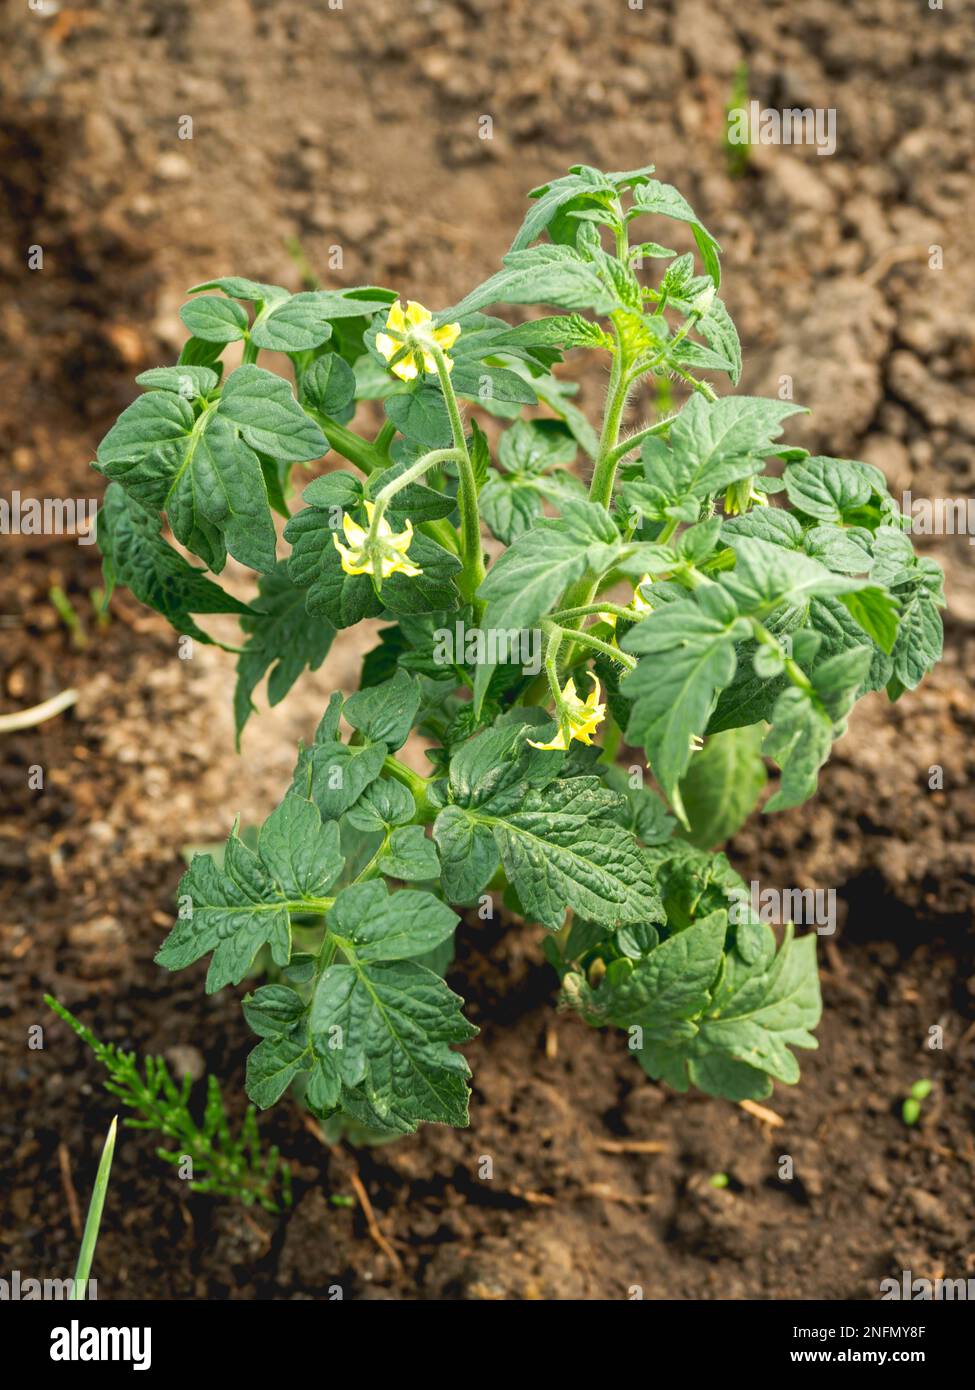 Tomate in offenem Boden. Grüne frische Blätter der essbaren Pflanze. Gartenarbeit im Frühjahr und Sommer. Anbau von Bio-Lebensmitteln. Stockfoto